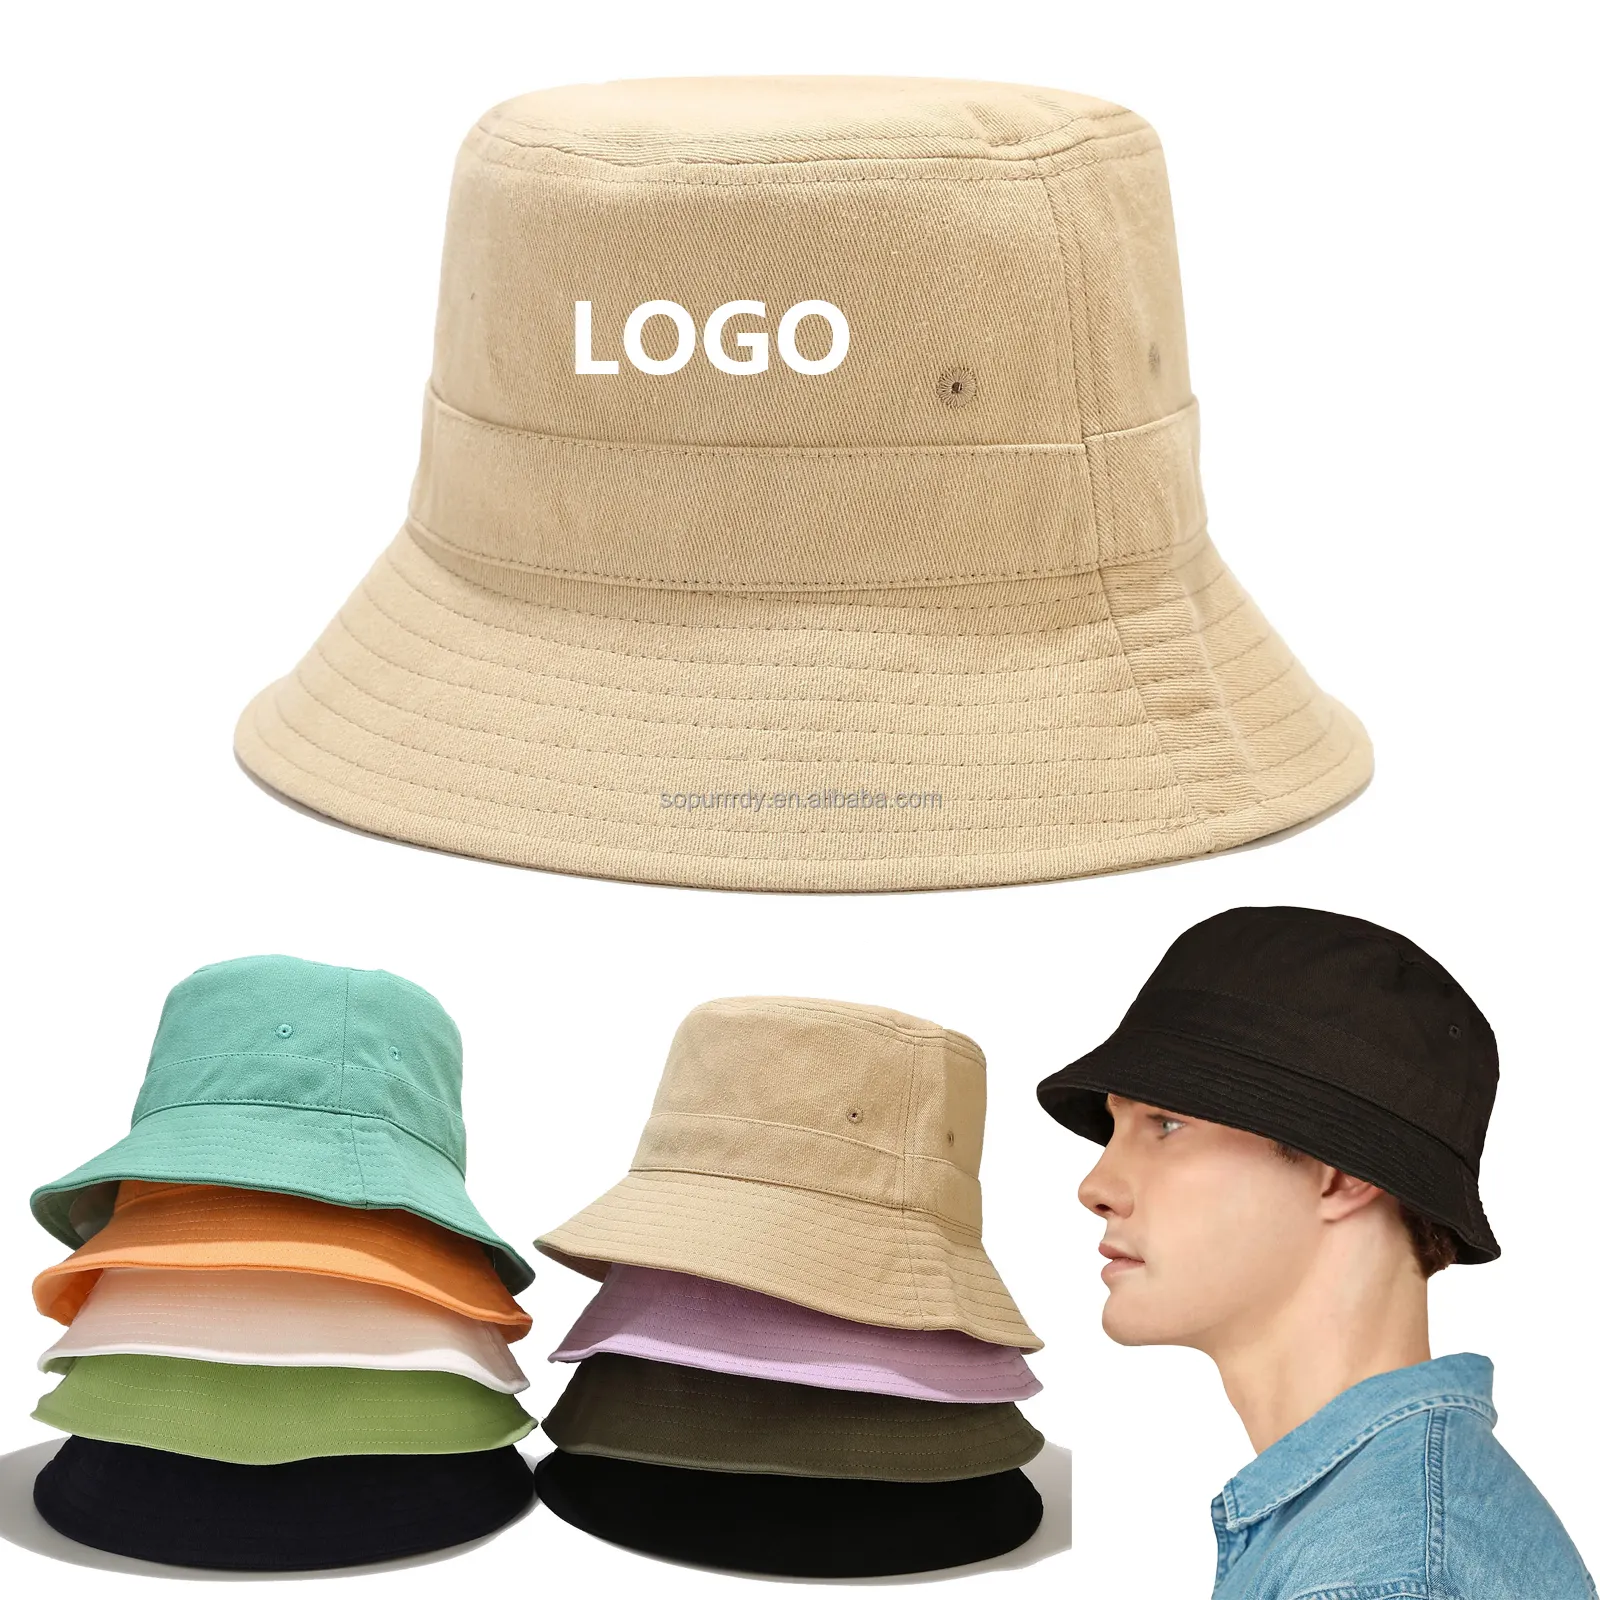 뜨거운 여름 버킷 햇 트렌디 한 사용자 정의 로고 면 태양 모자 비치 골프 낚시 야외 휴가 남성과 여성을위한 버킷 모자